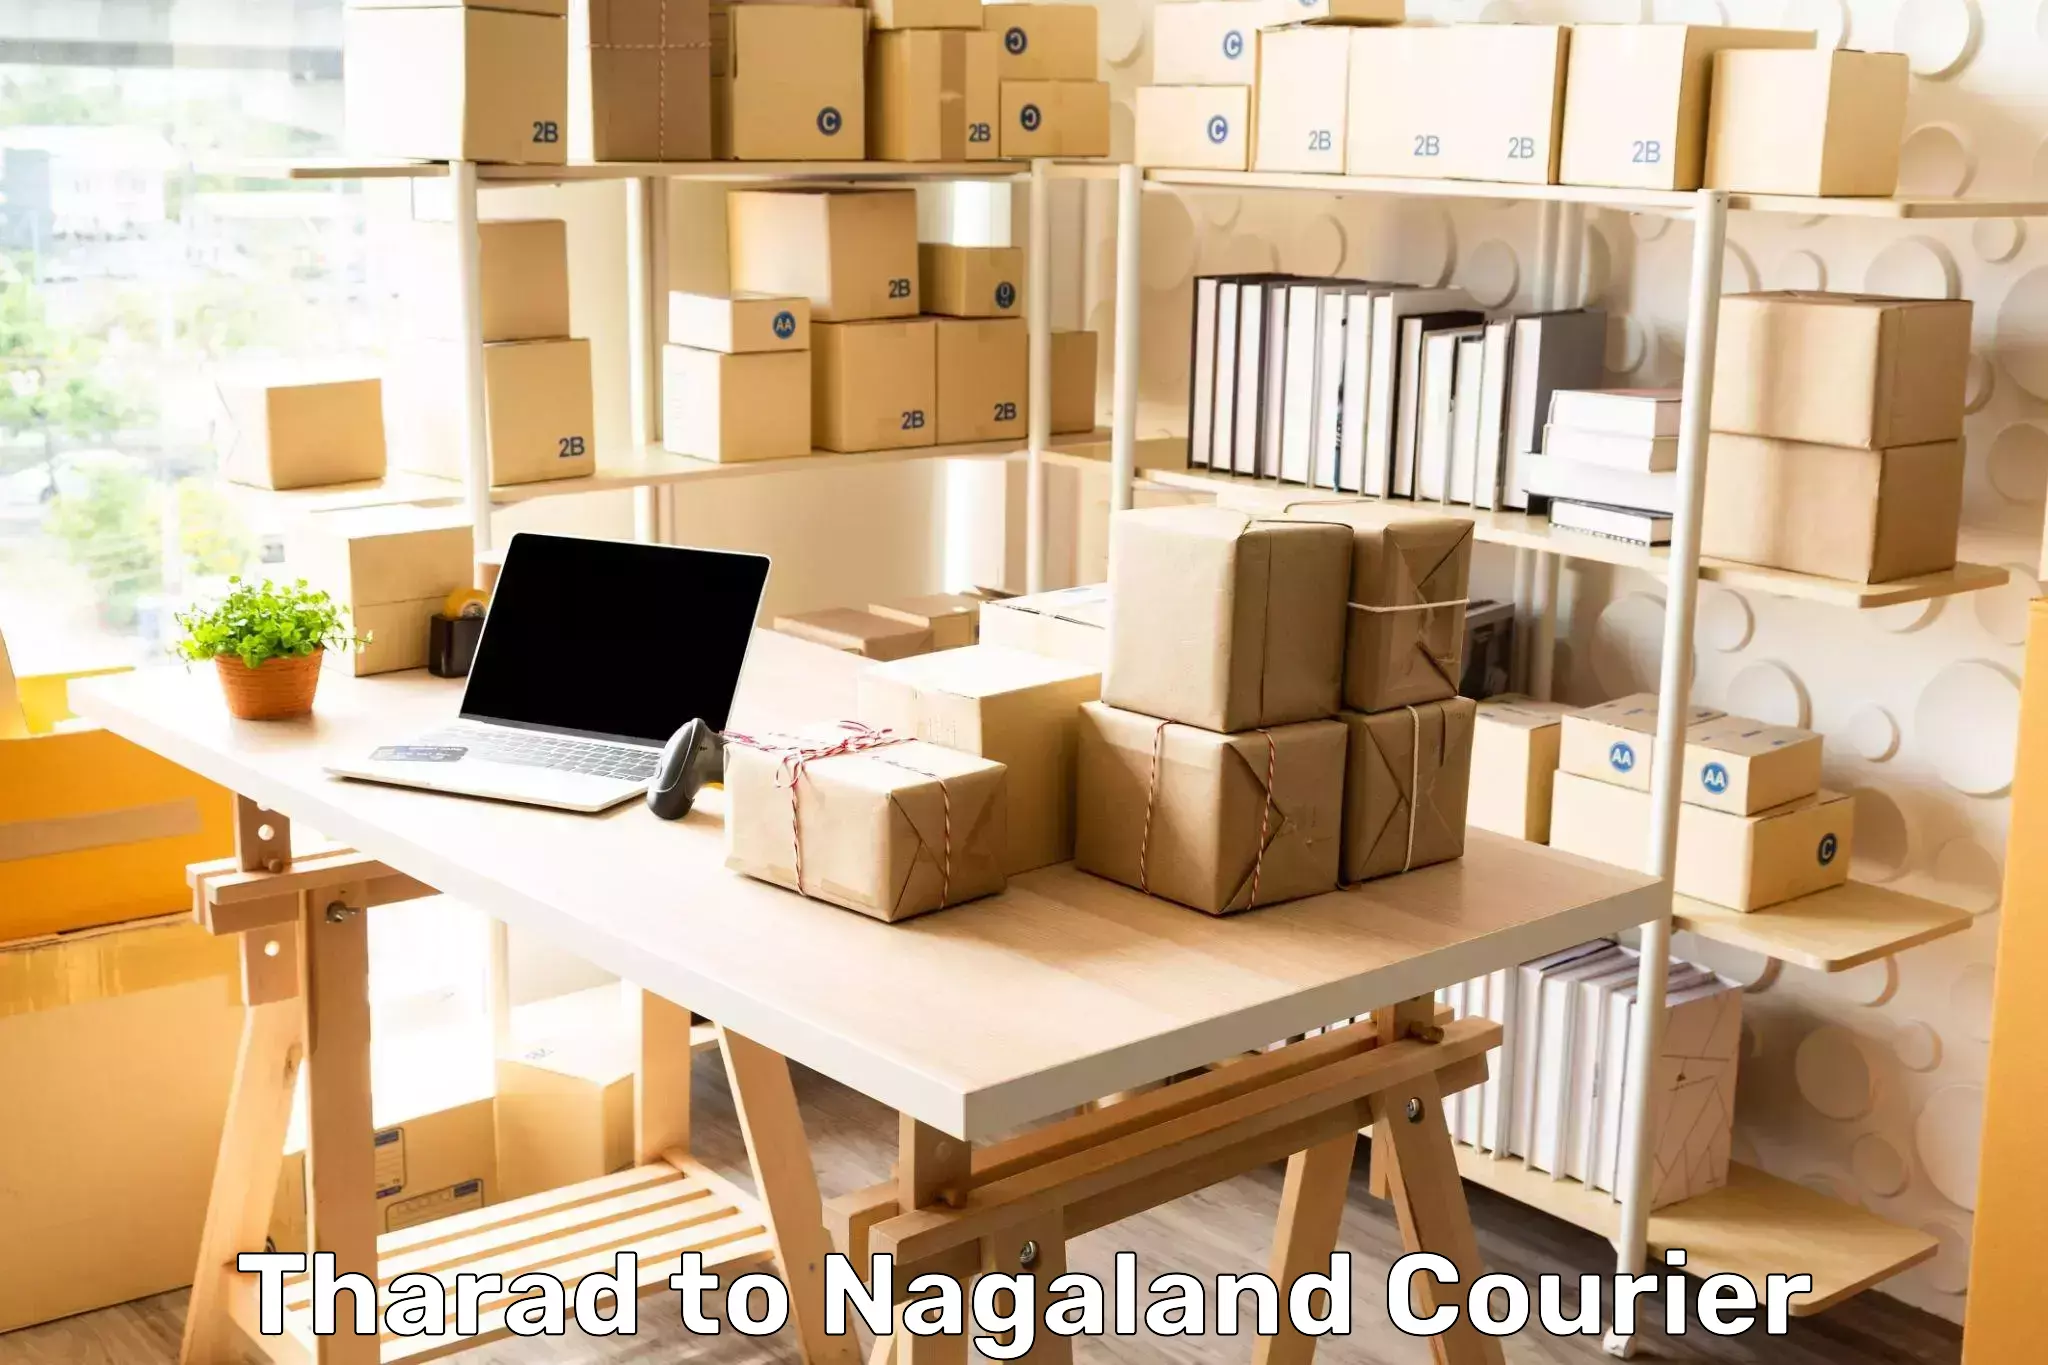 Tech-enabled shipping Tharad to Nagaland